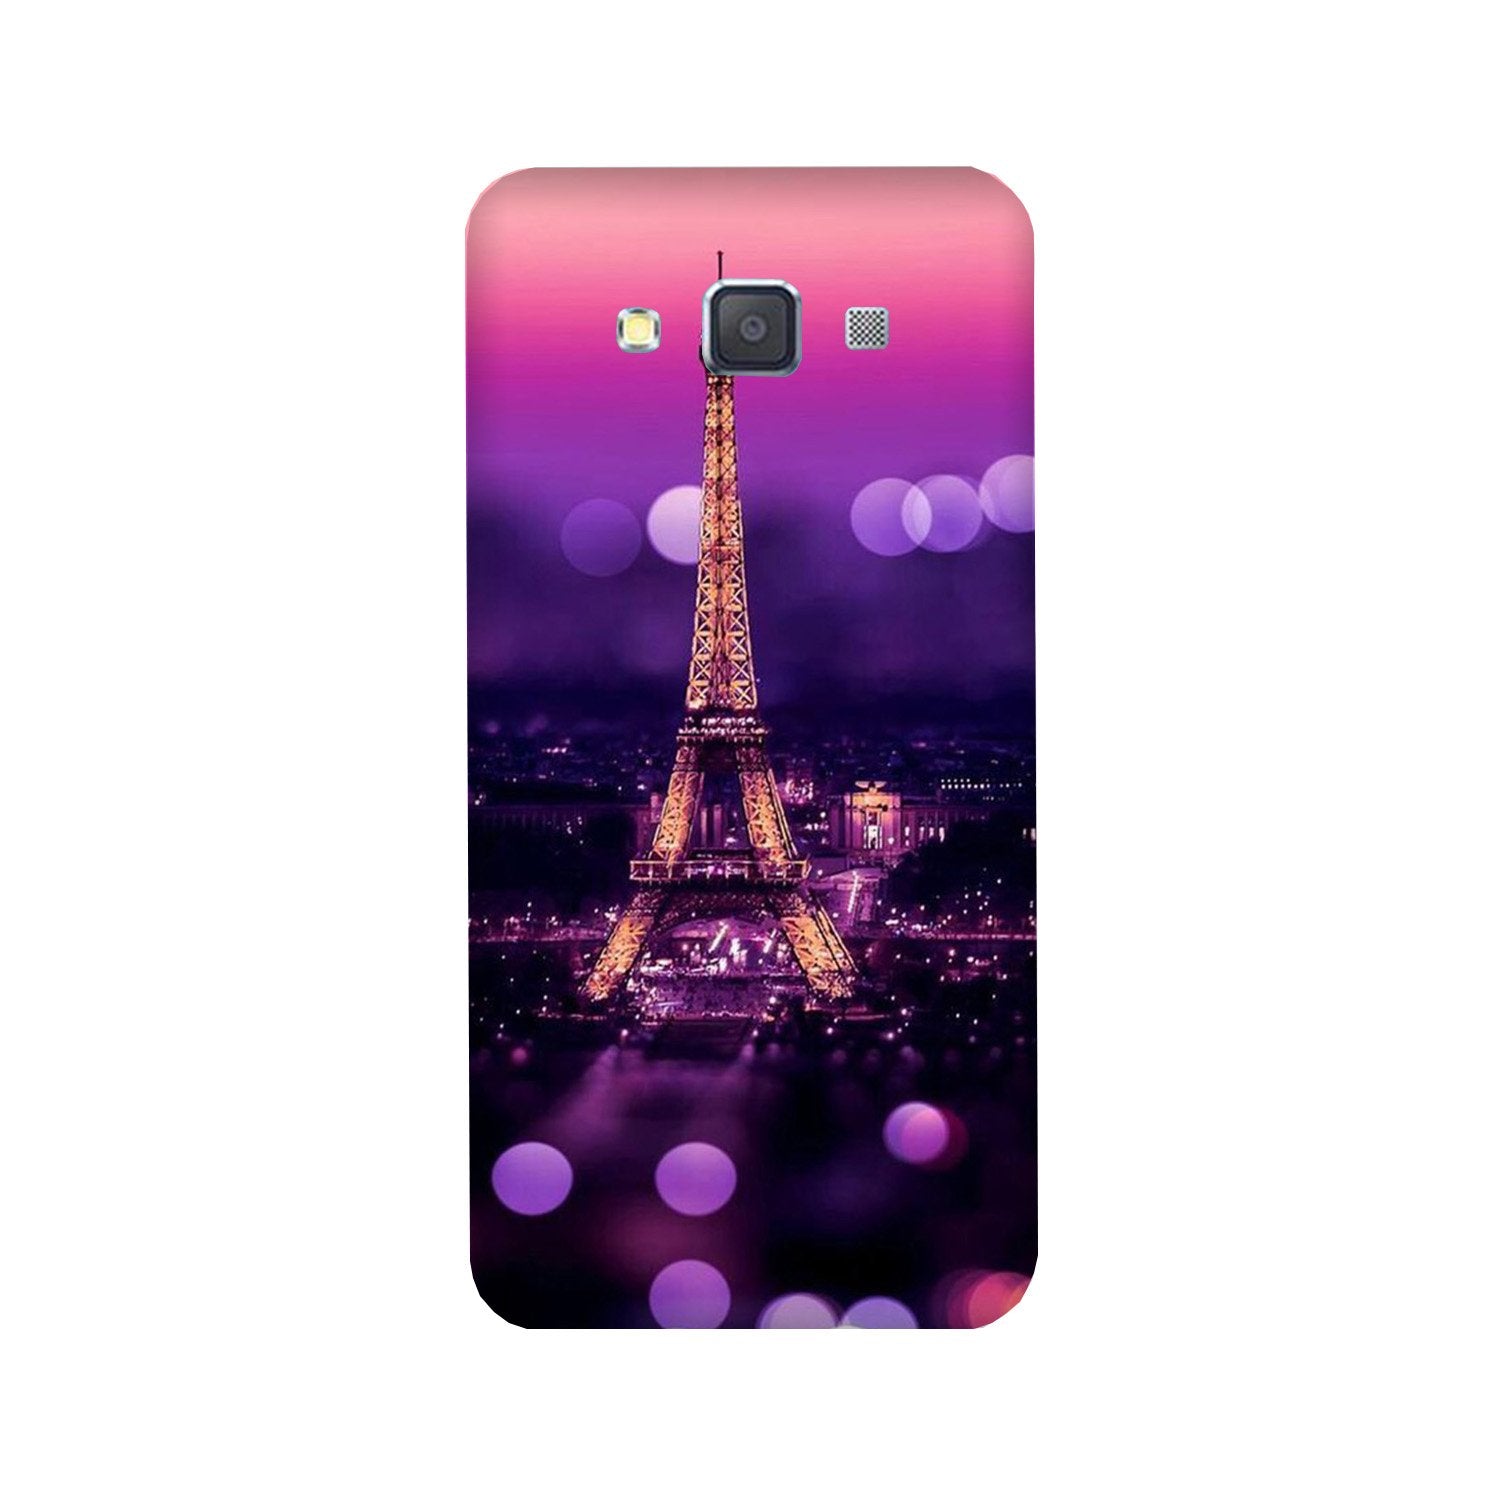 Eiffel Tower Case for Galaxy A3 (2015)